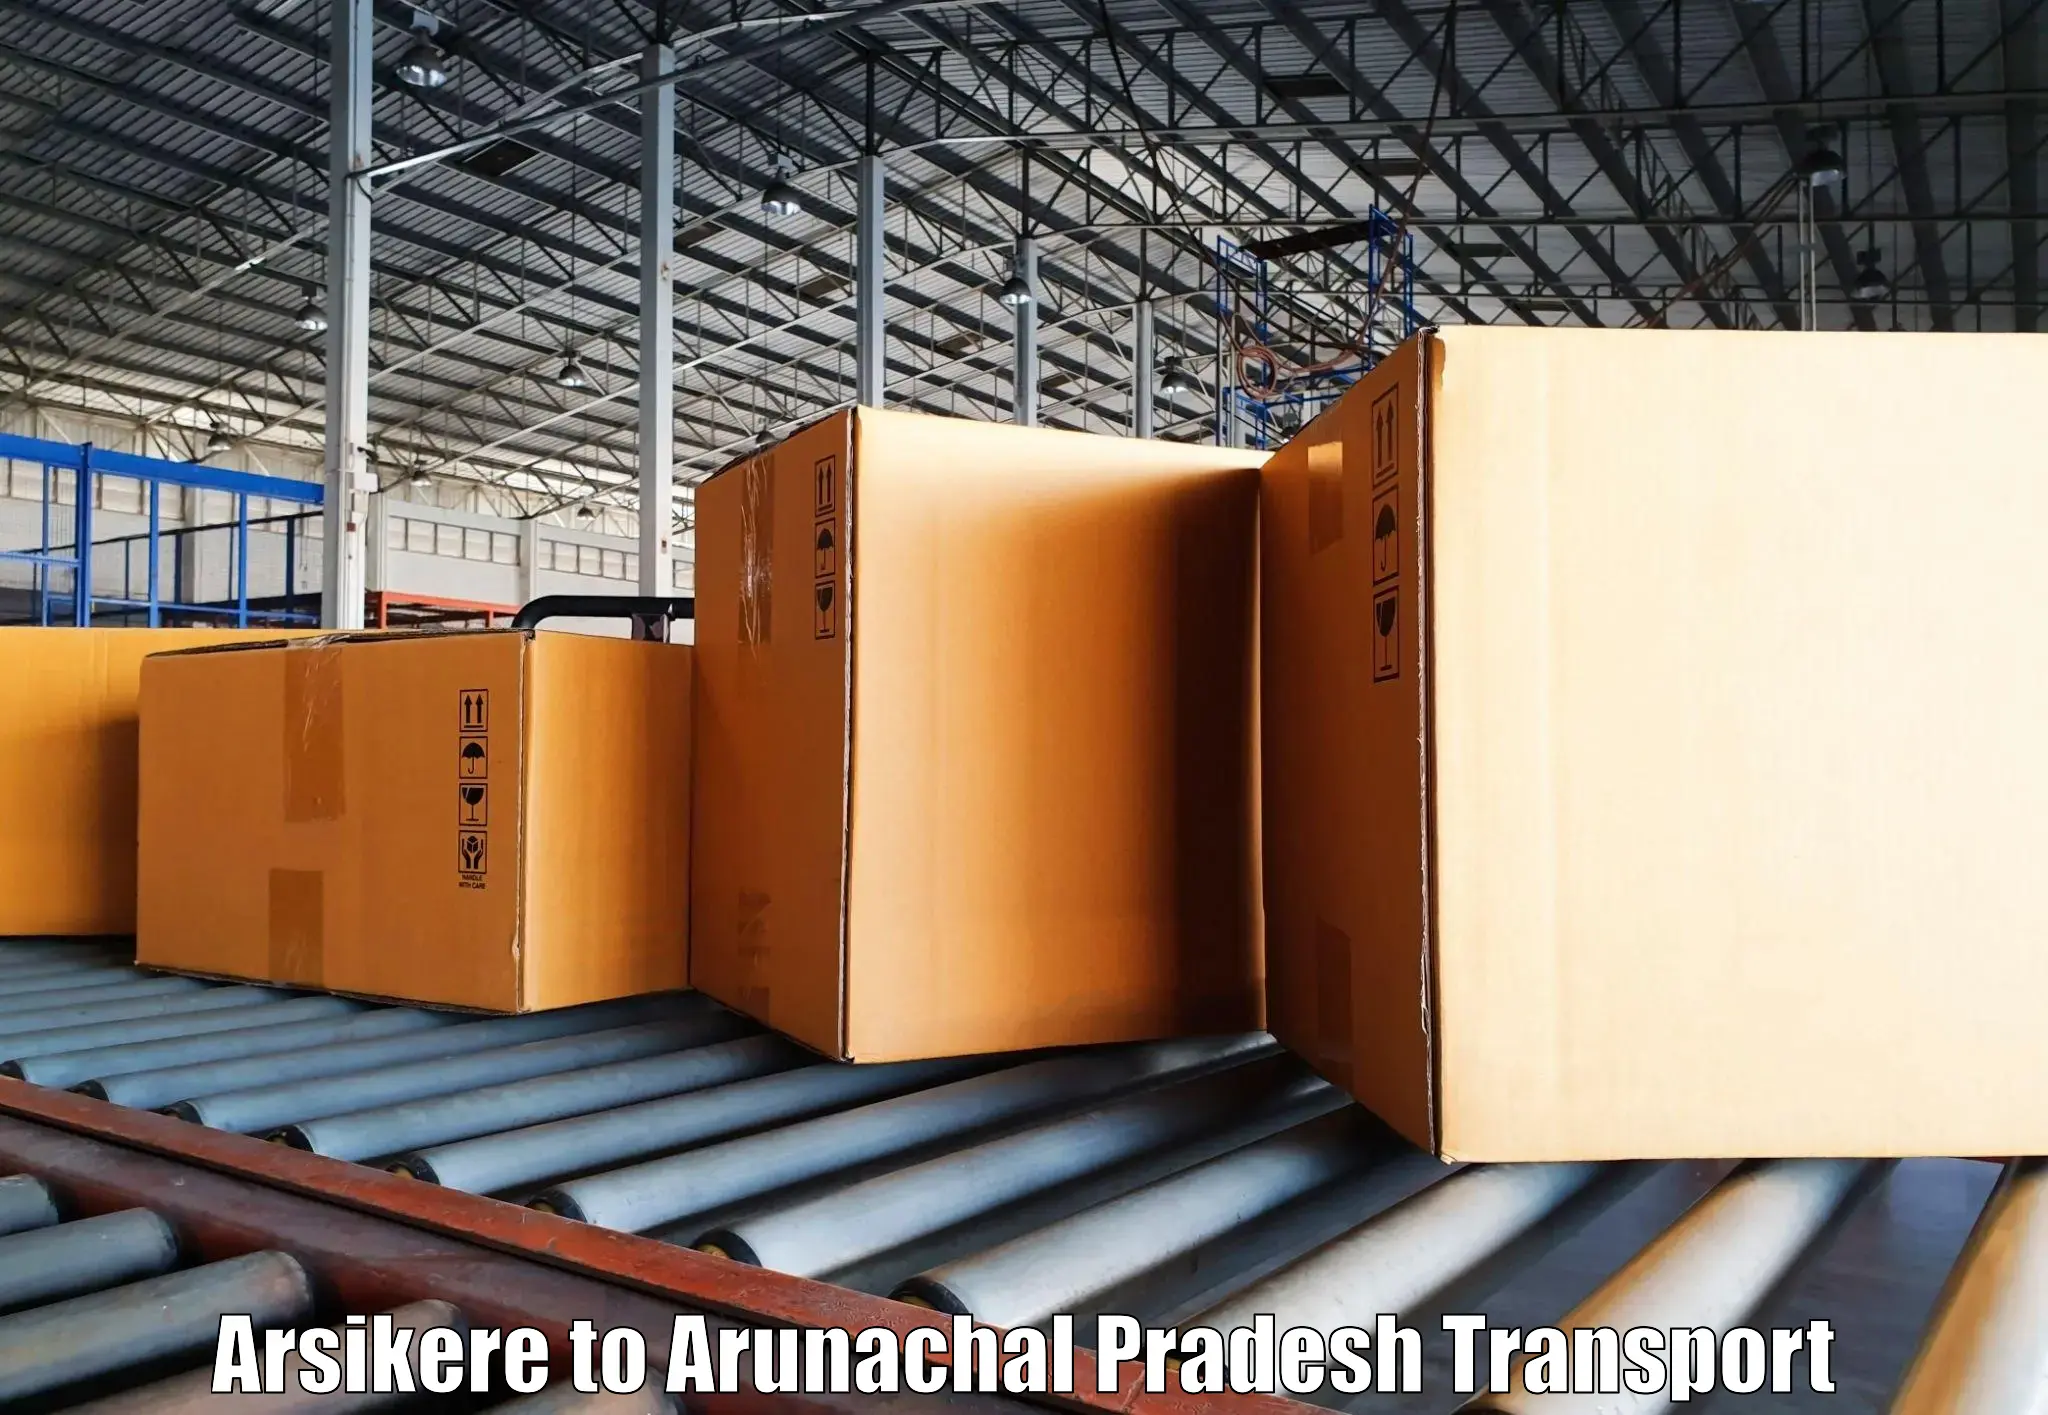 Transport shared services in Arsikere to Arunachal Pradesh